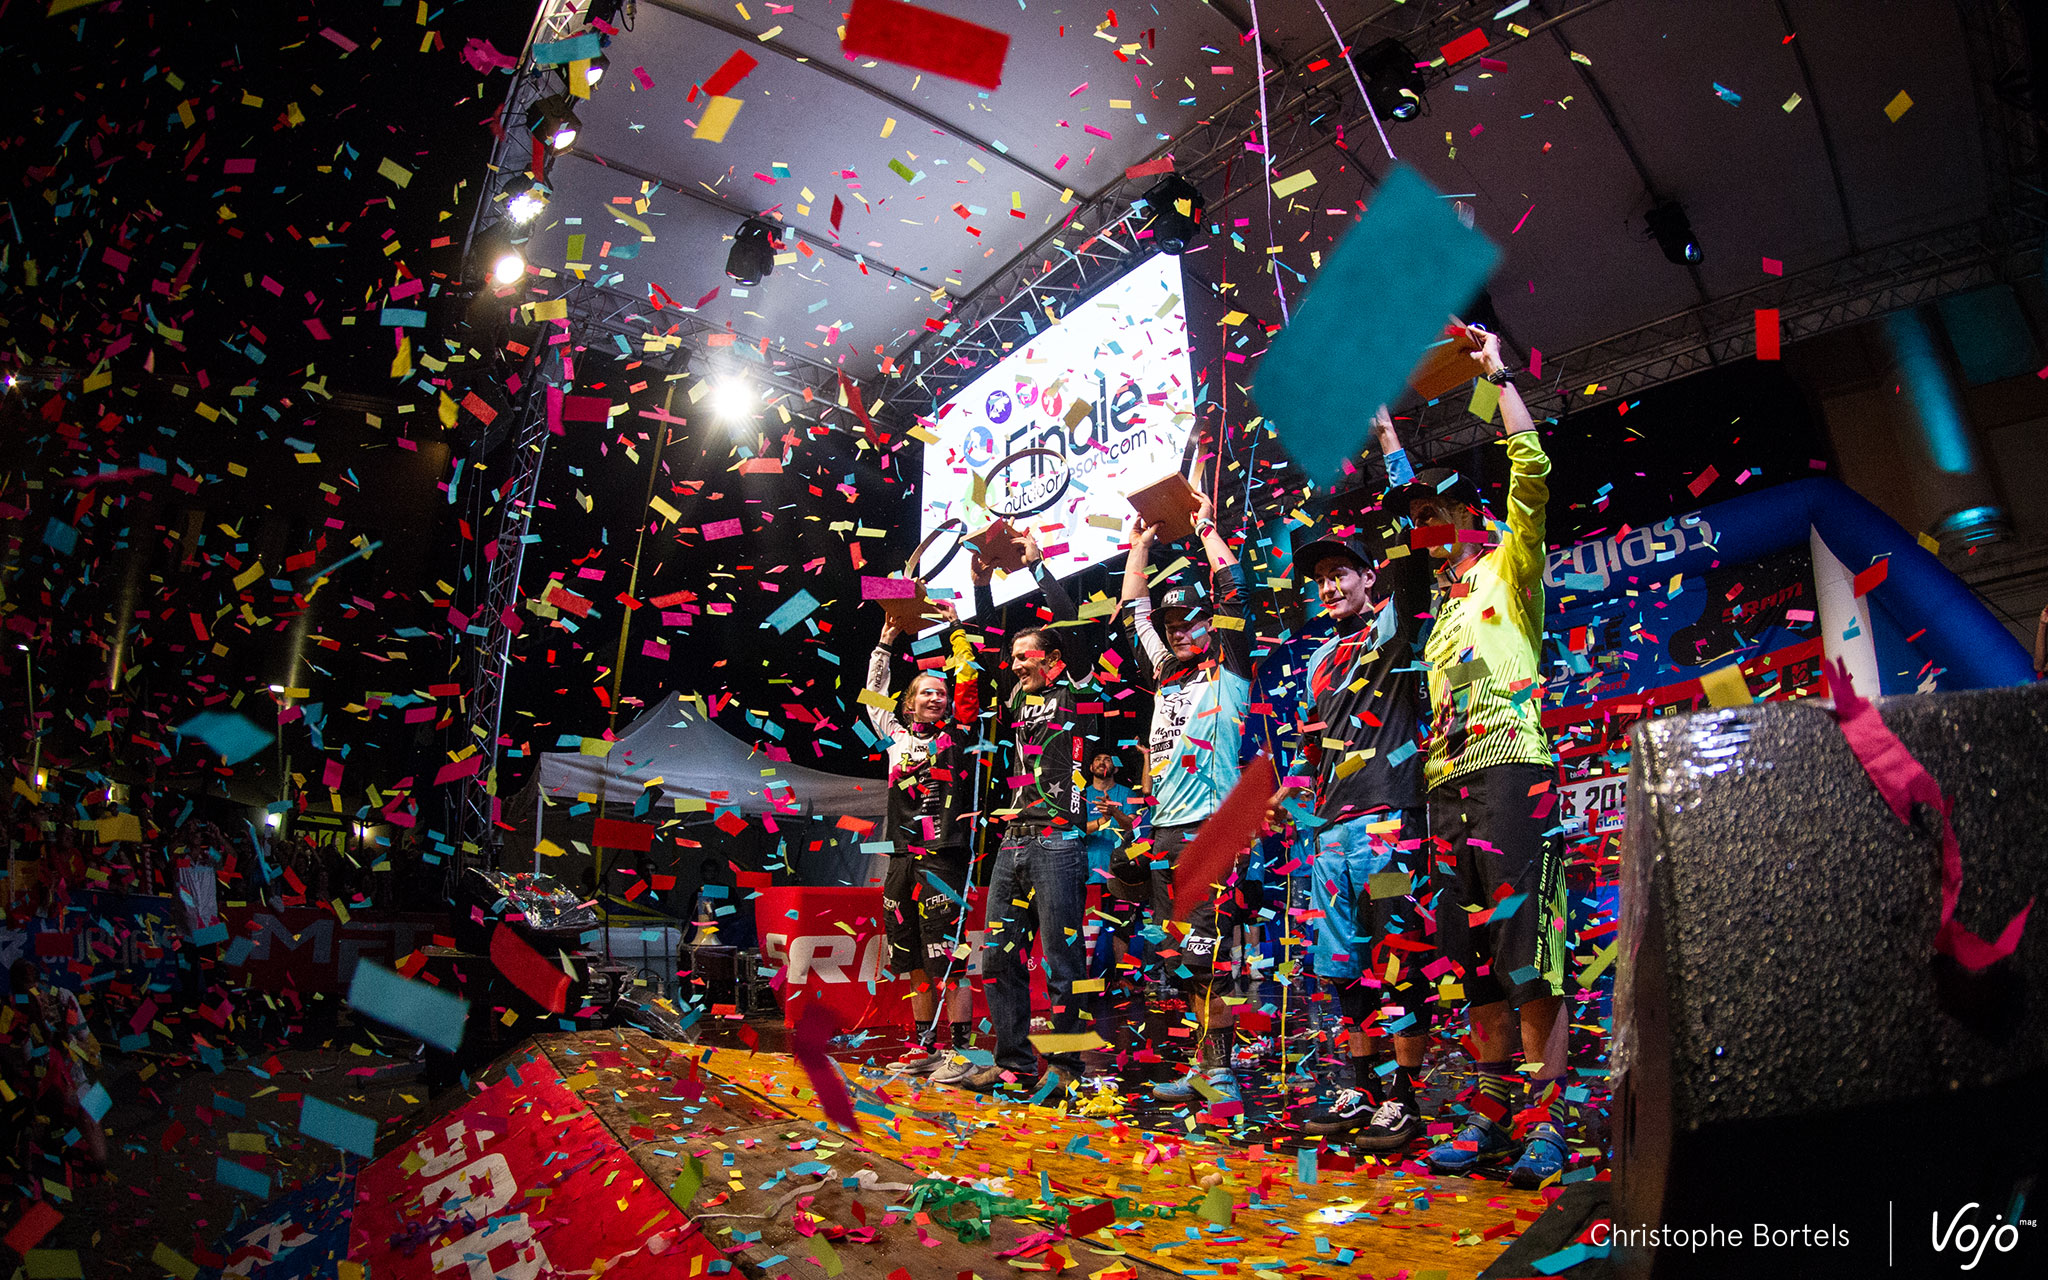 Achter de confetti de vijf wereldkampioenen van 2016: Raphaela Richter, Michael Broderick, Richie Rude, Adrien Dailly en Cécile Ravanel.